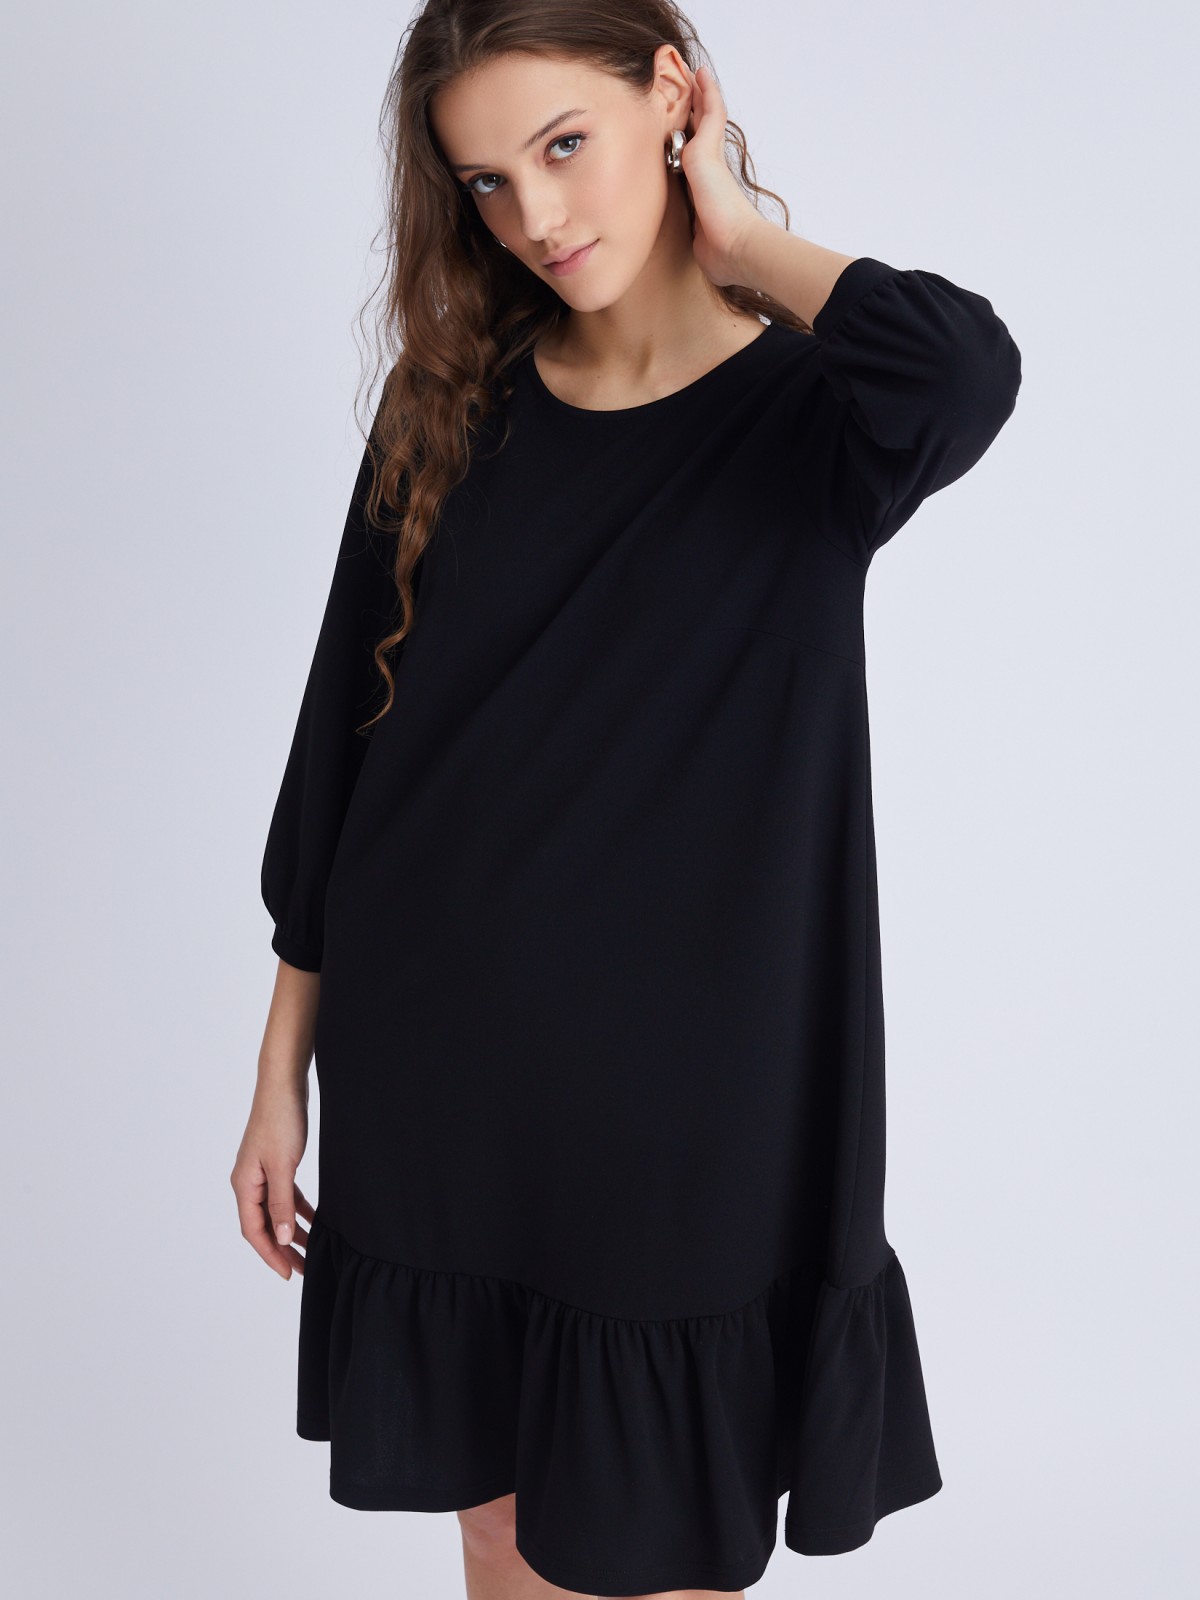 Платье А-силуэта длины мини с воланом zolla 02333819F203, цвет черный, размер S